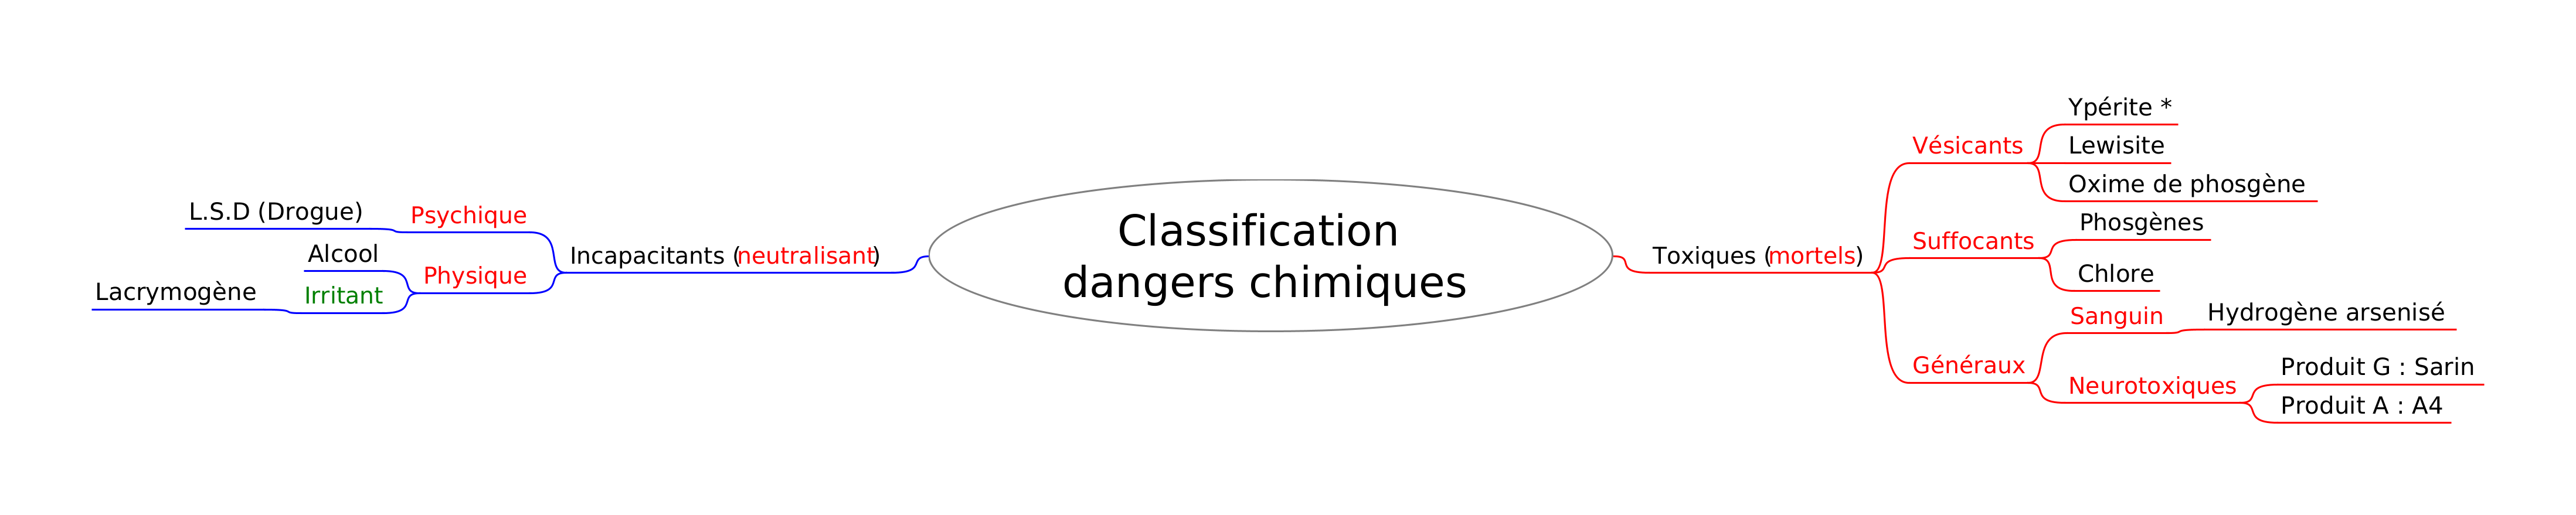 Classification_dangers_chimiques.png